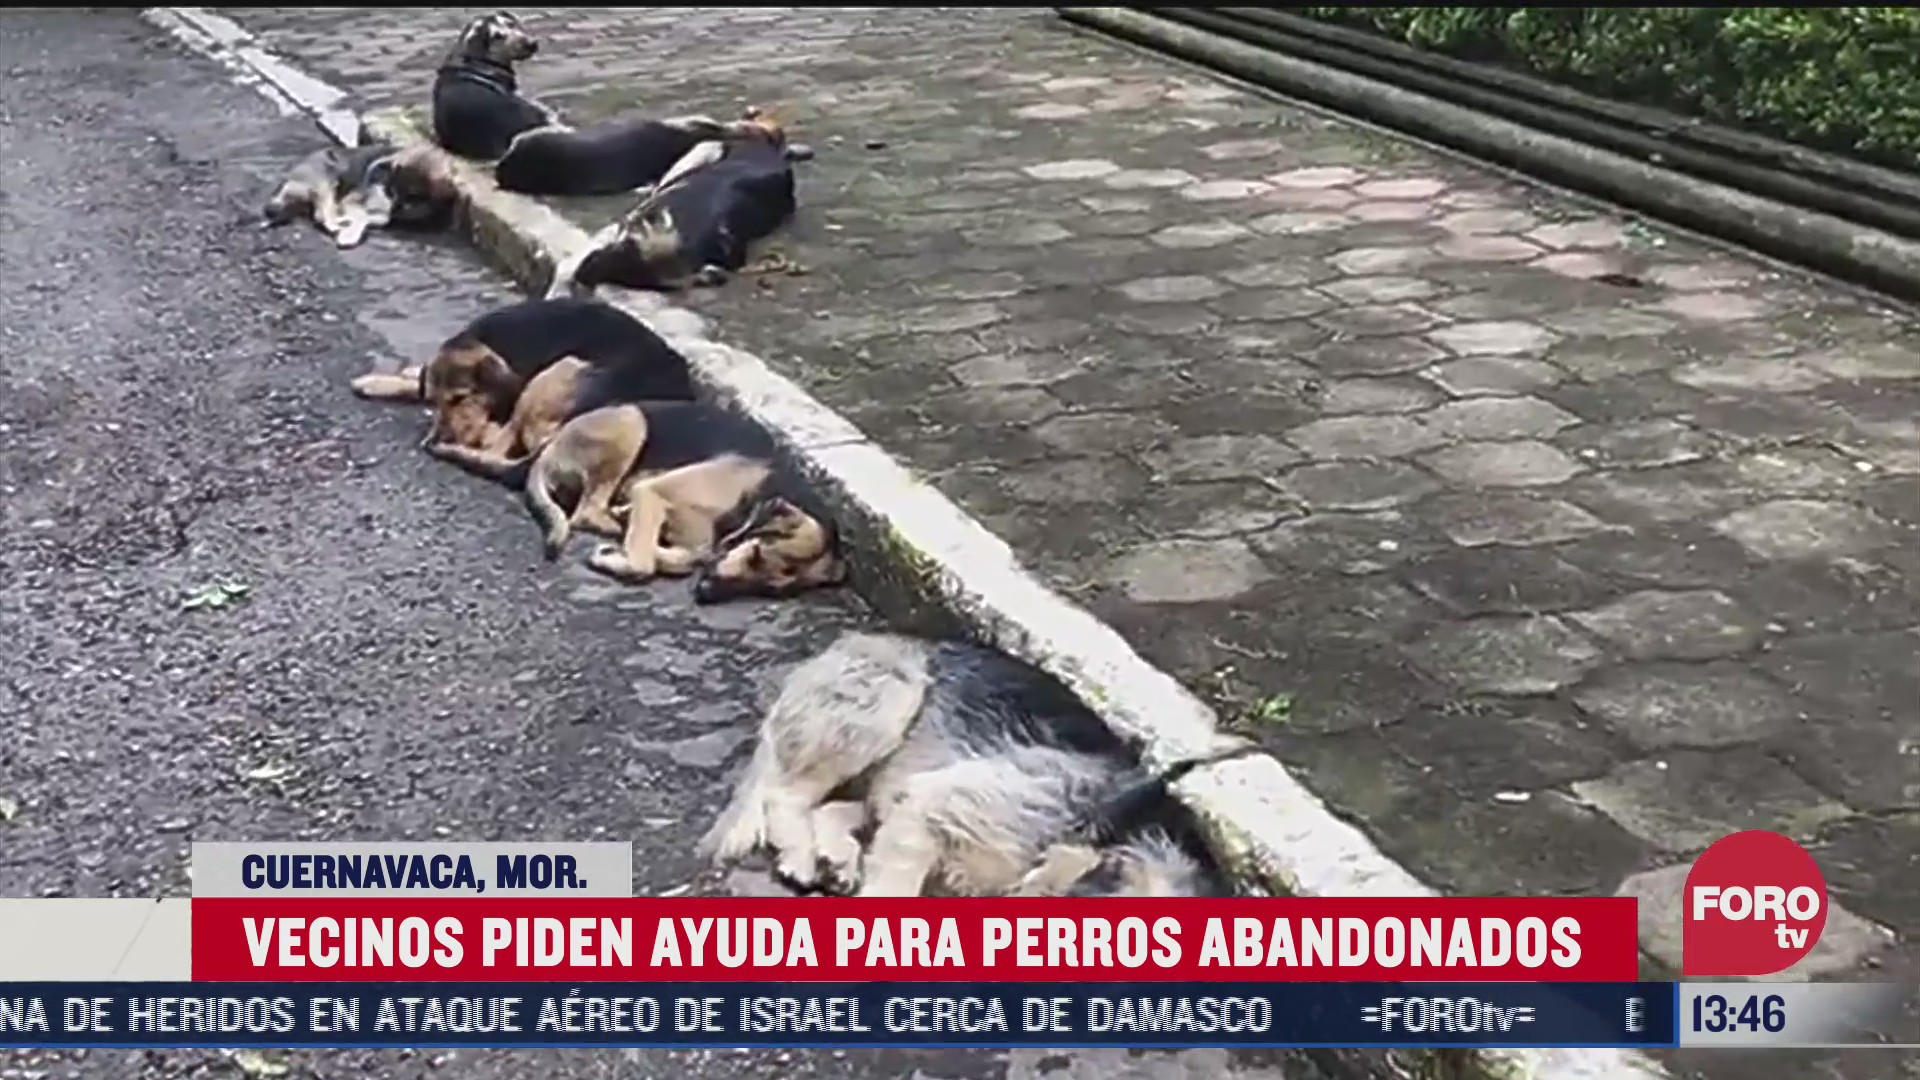 perros abandonados por sus duenos viven en calles de cuernavaca morelos